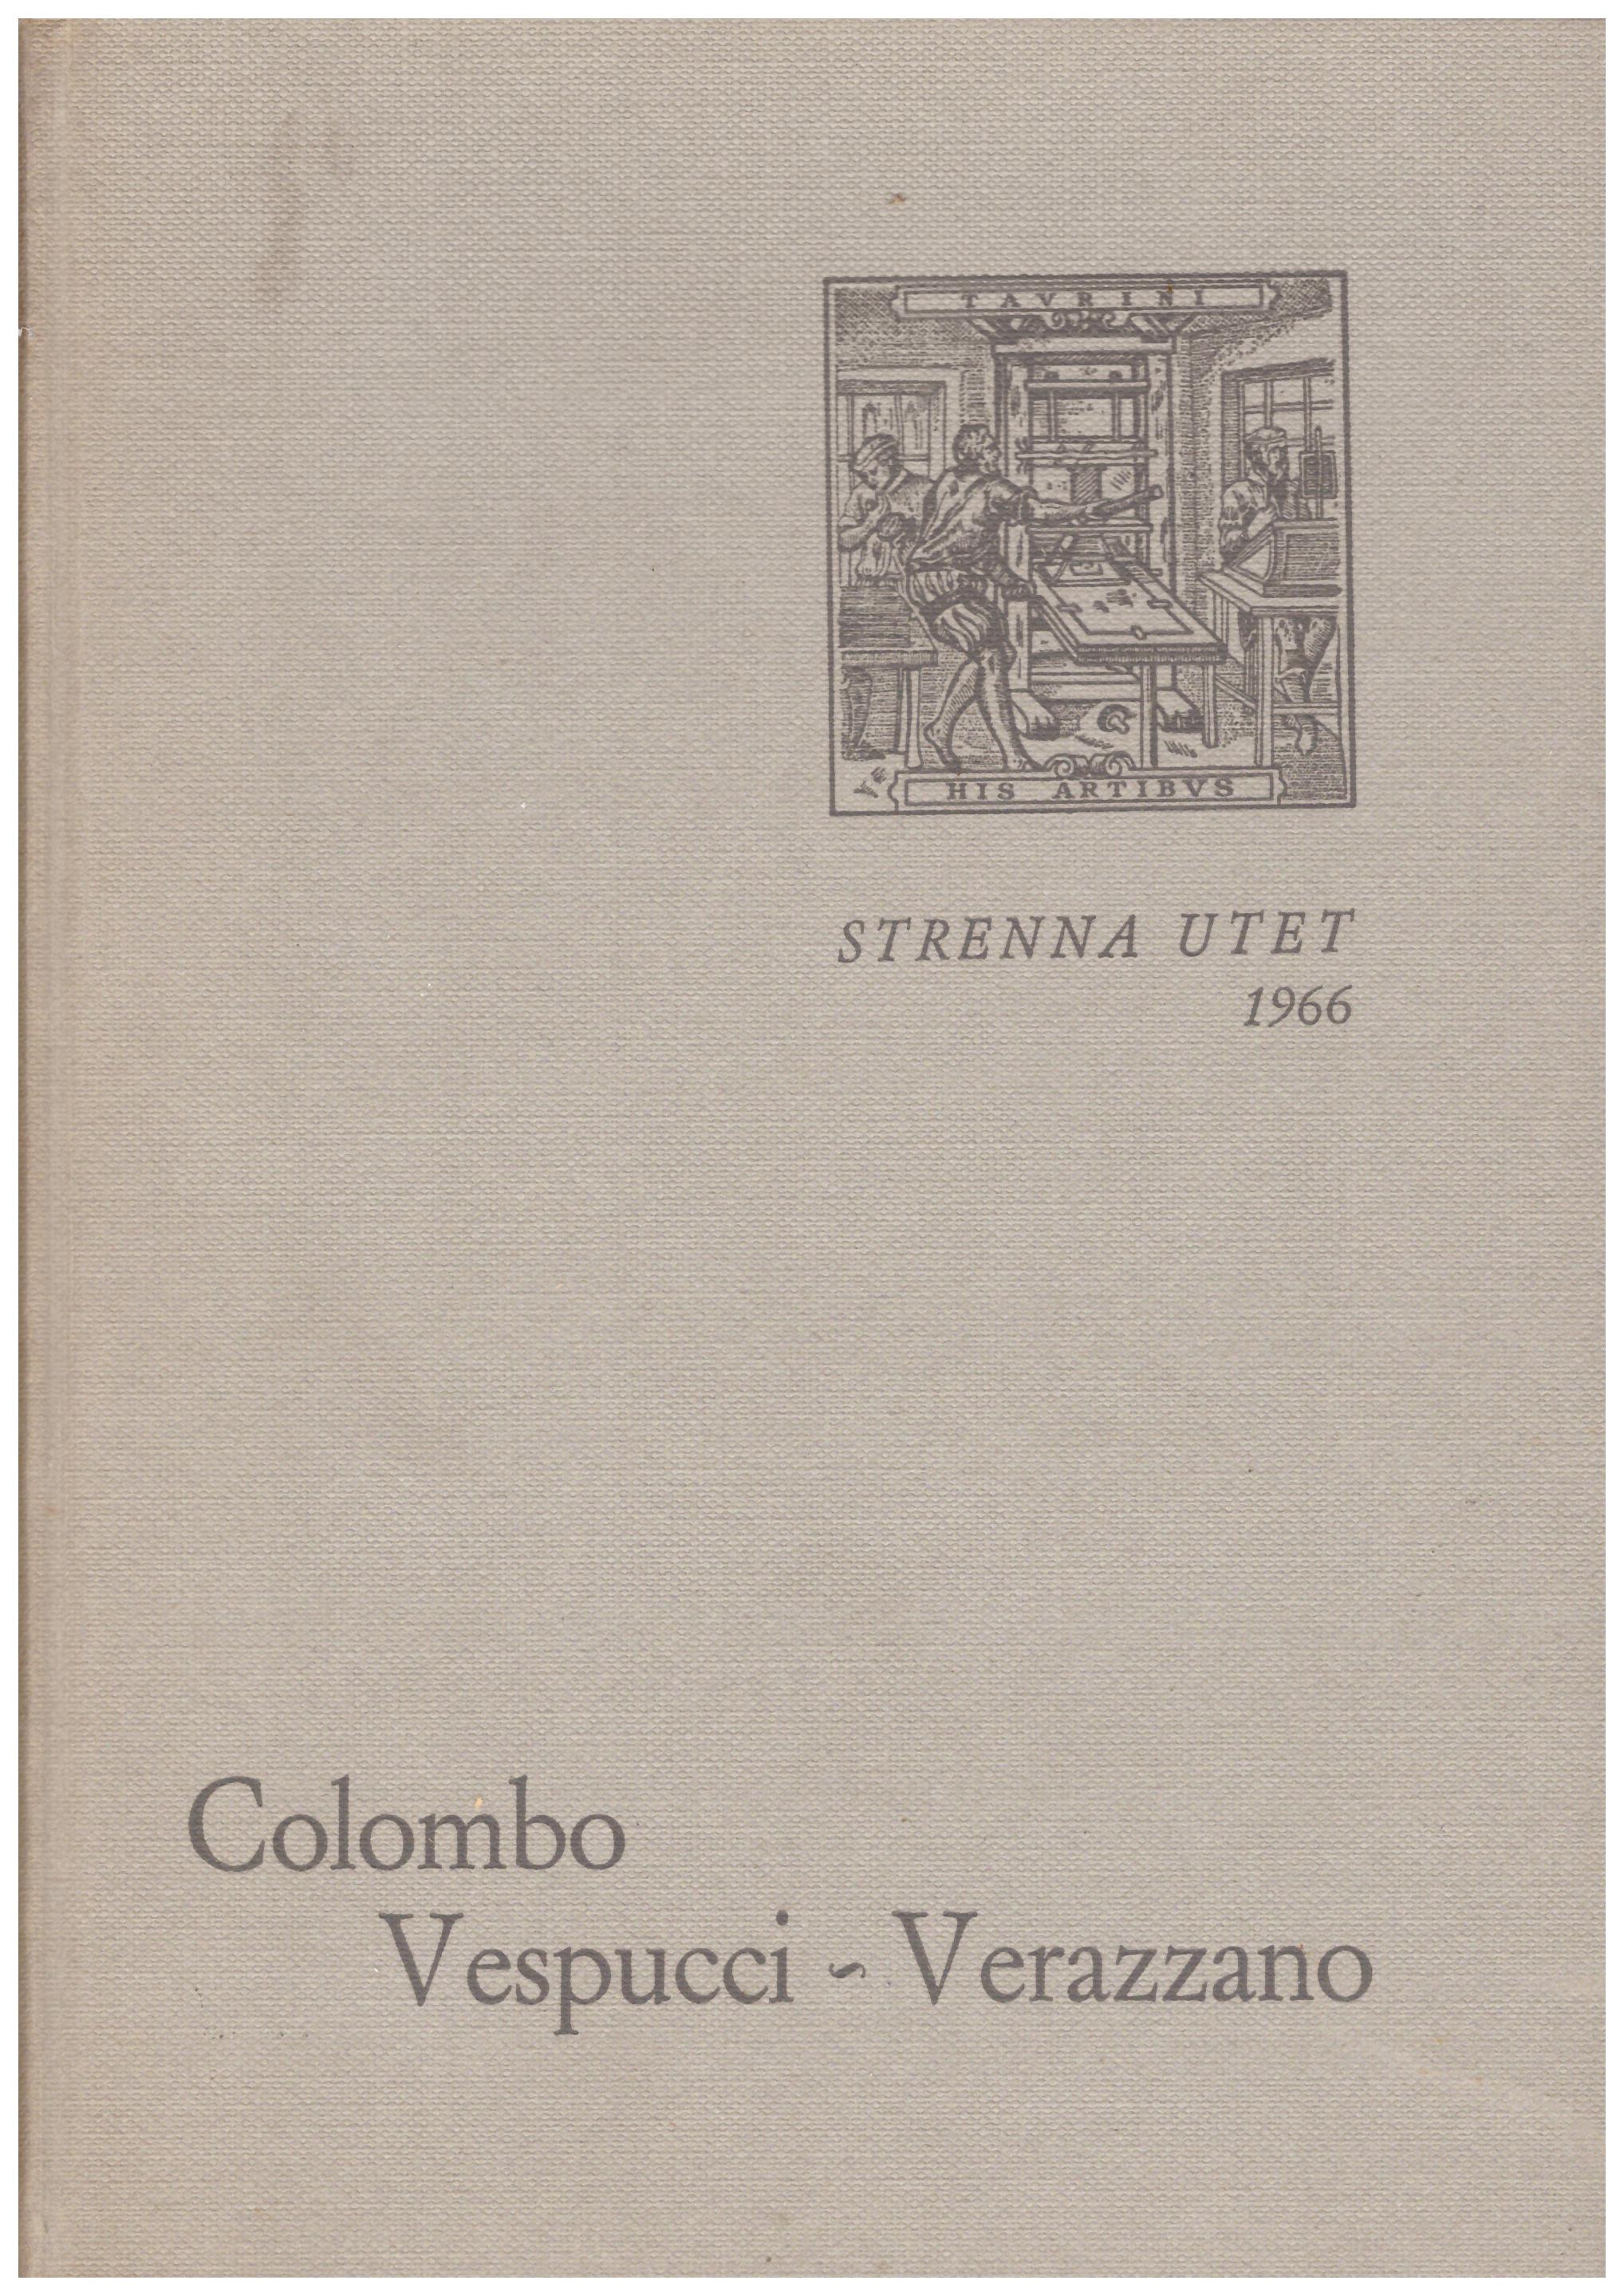 Titolo: Prime relazioni di navigatori italiani sulla scoperta dell'America Autore: Colombo, Vespucci, Verazzano Editore: Utet, 1966